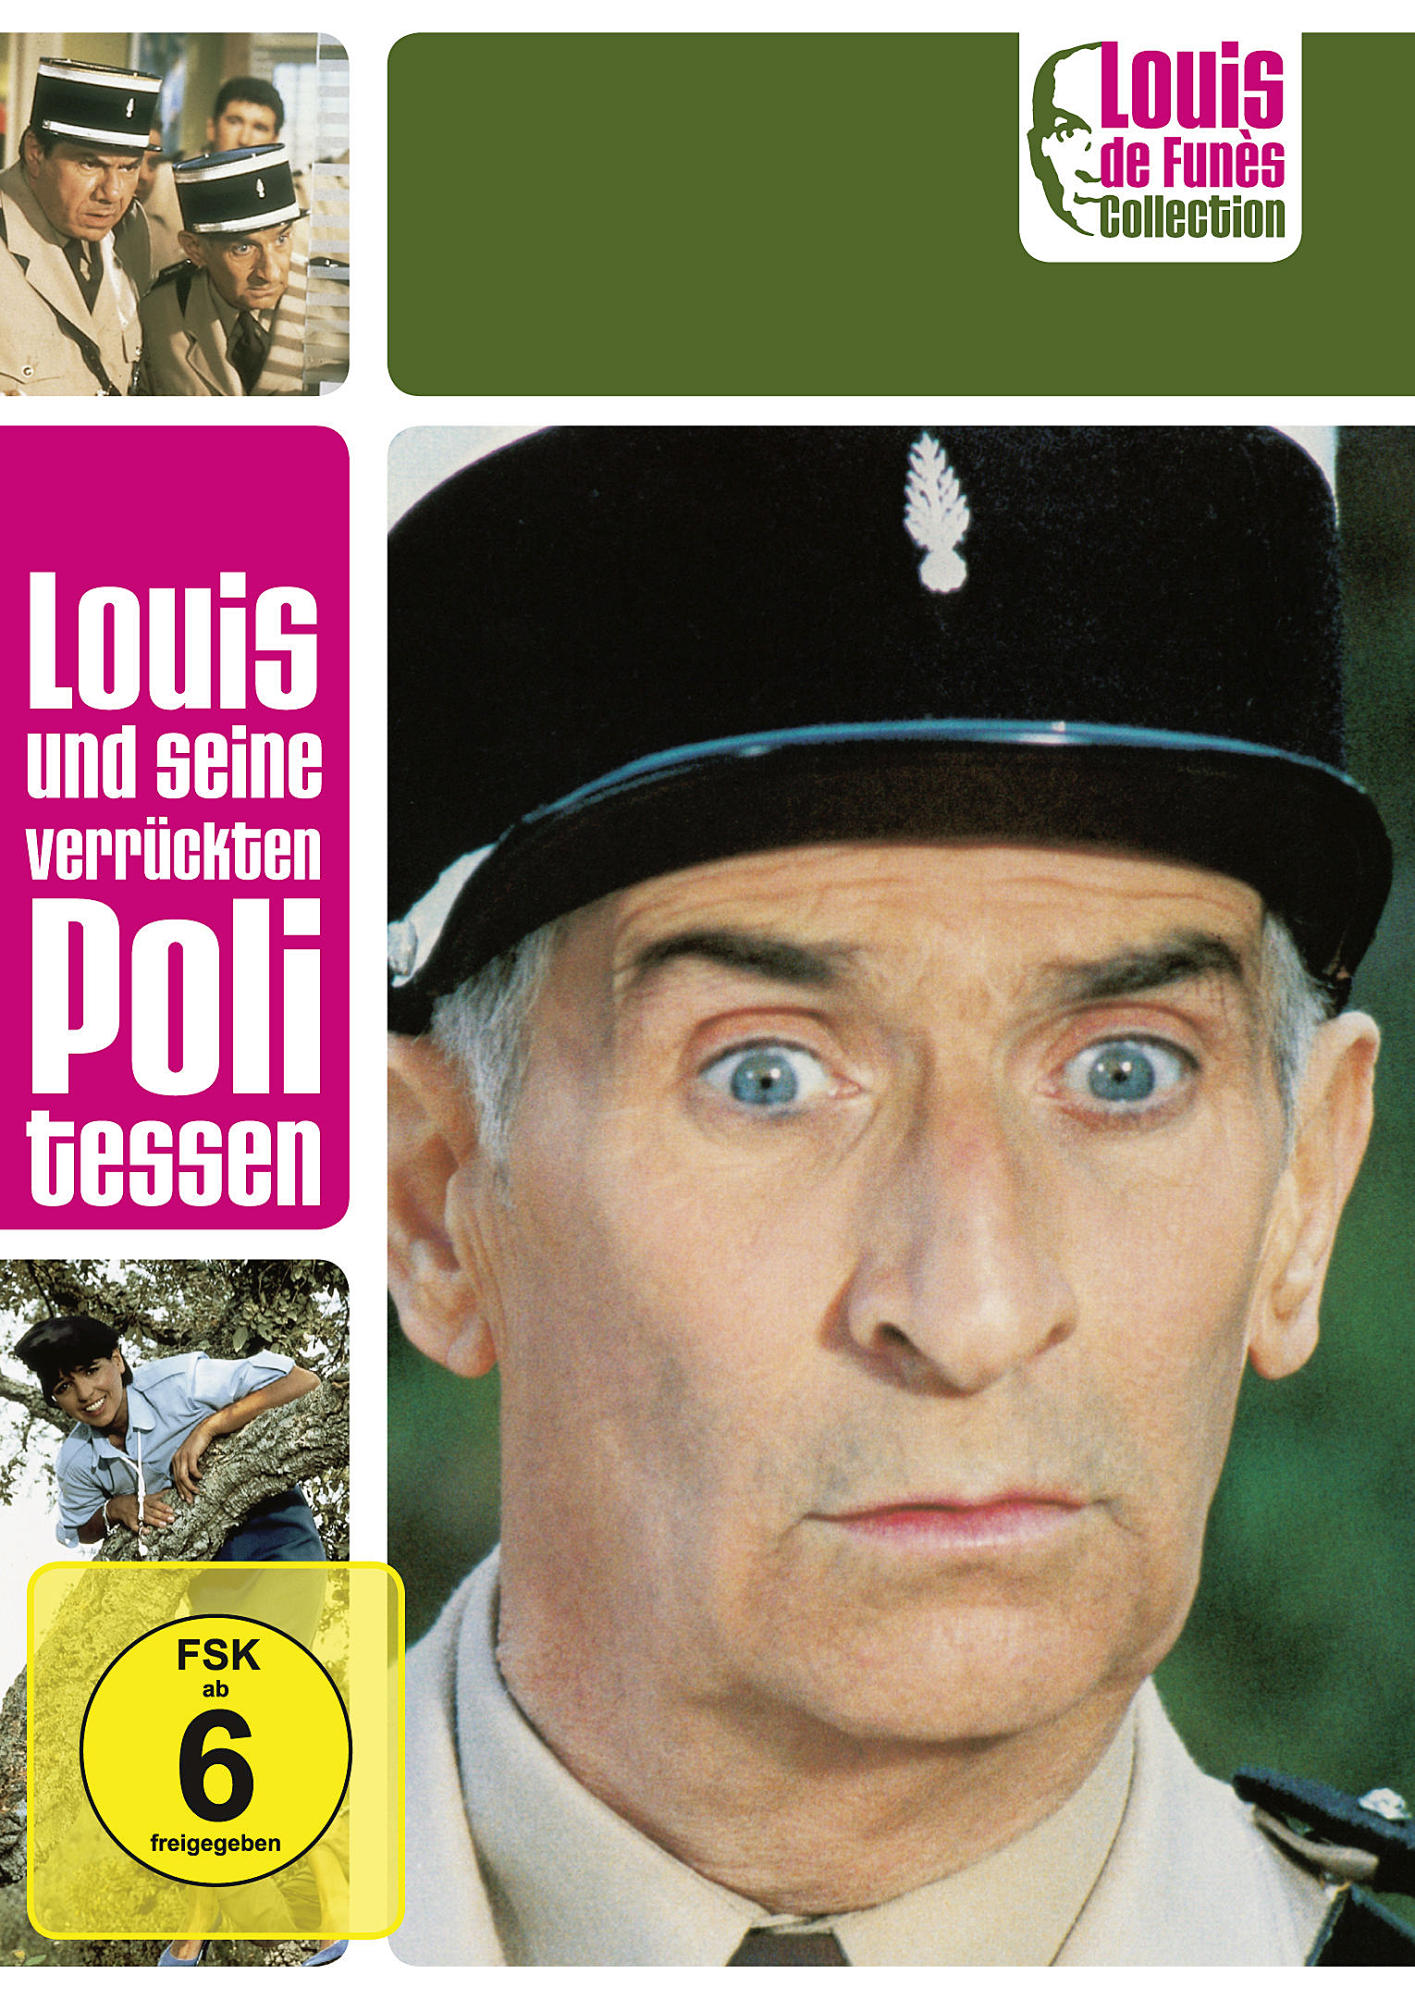 Politessen de DVD Louis Louis und Funès verrückten Collection - seine